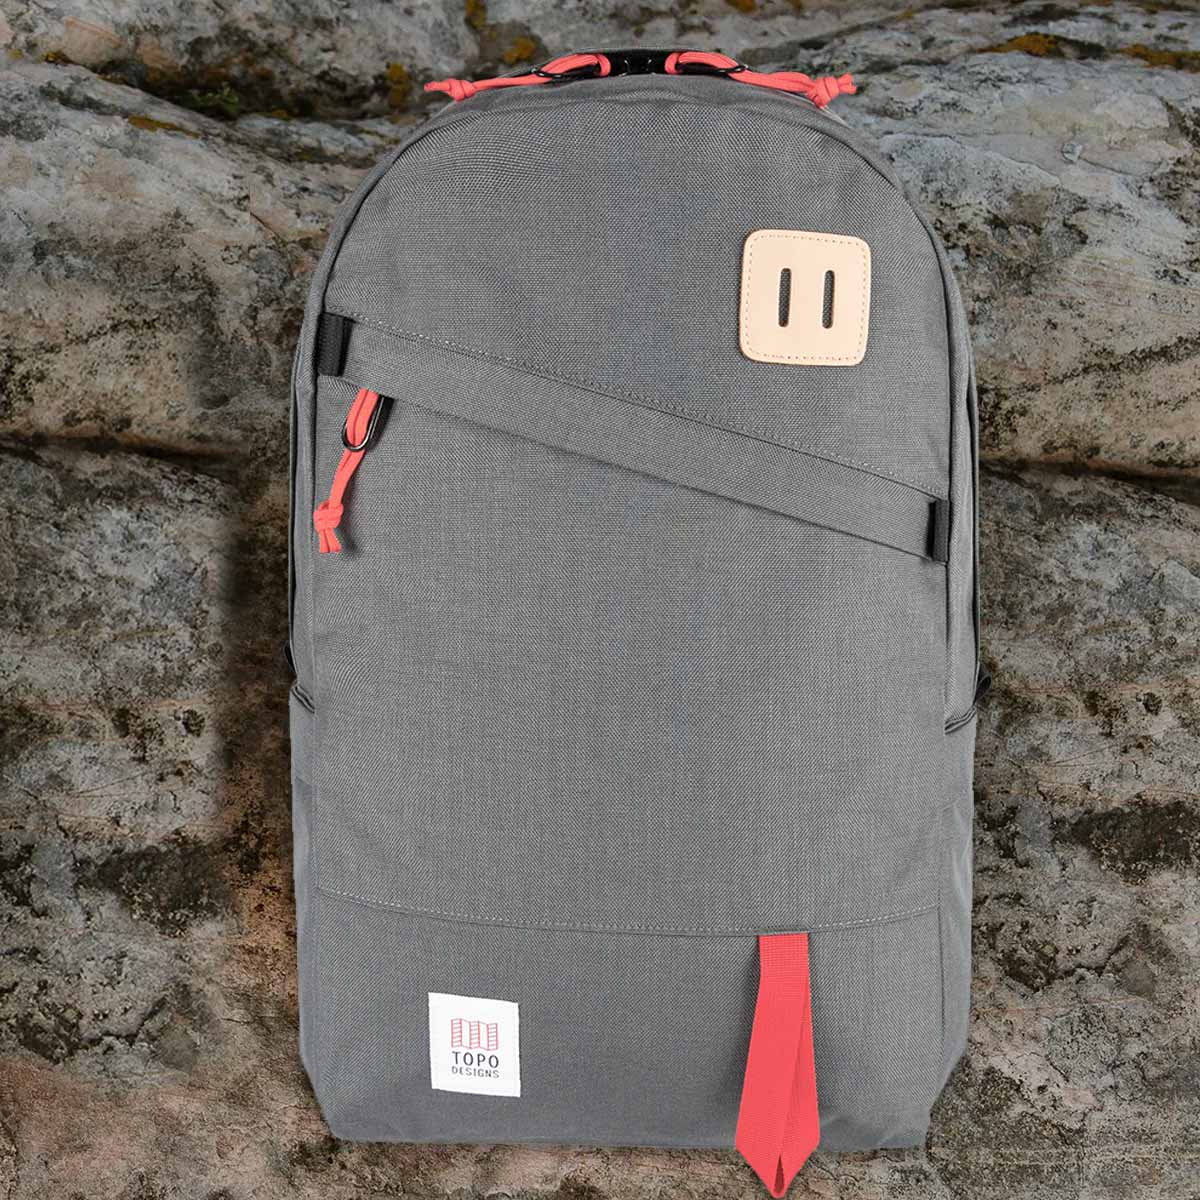 Topo Designs Daypack Classic Charcoal, zeer sterke rugzak met klassieke uitstraling, uitermate geschikt voor dagelijks gebruik